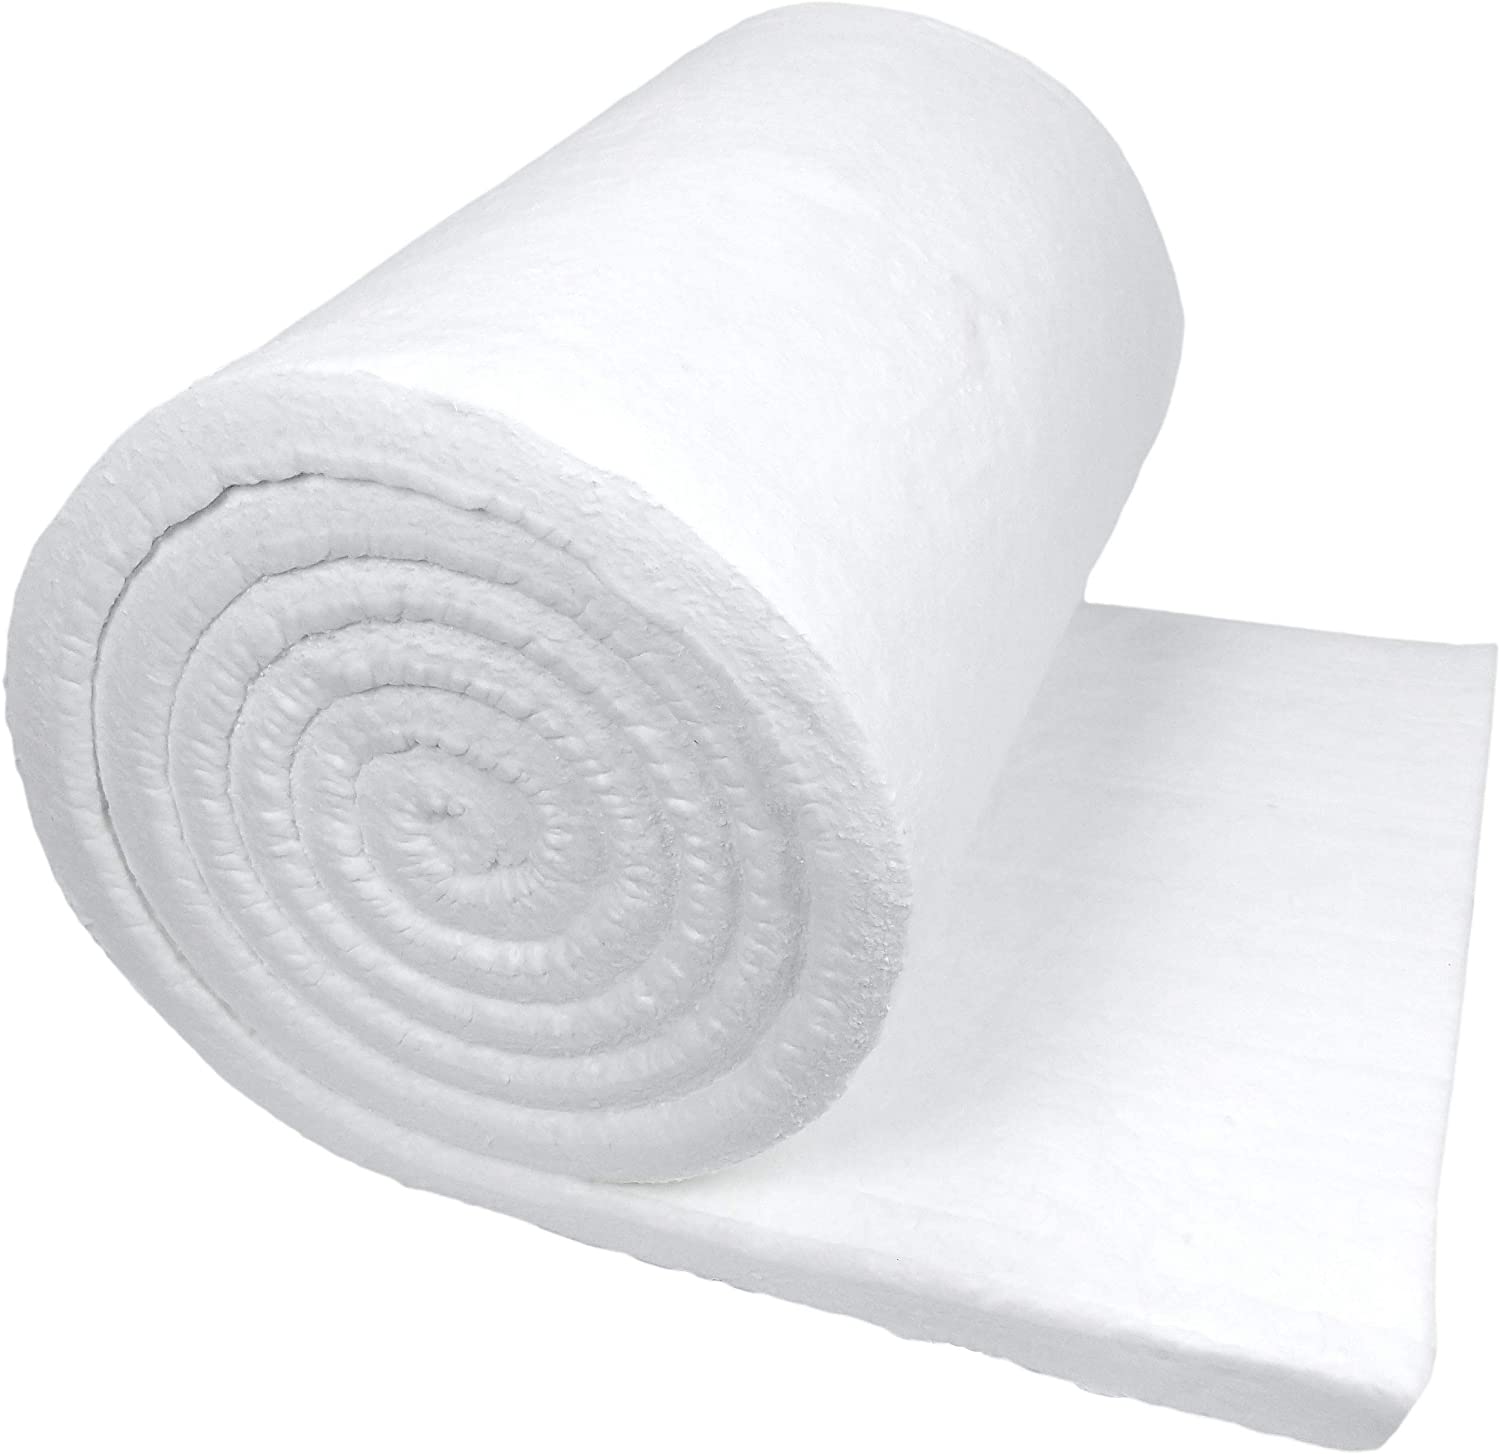 1 CeraBlanket 12x24 Ceramic Fiber Blanket Insulation 8# Thermal